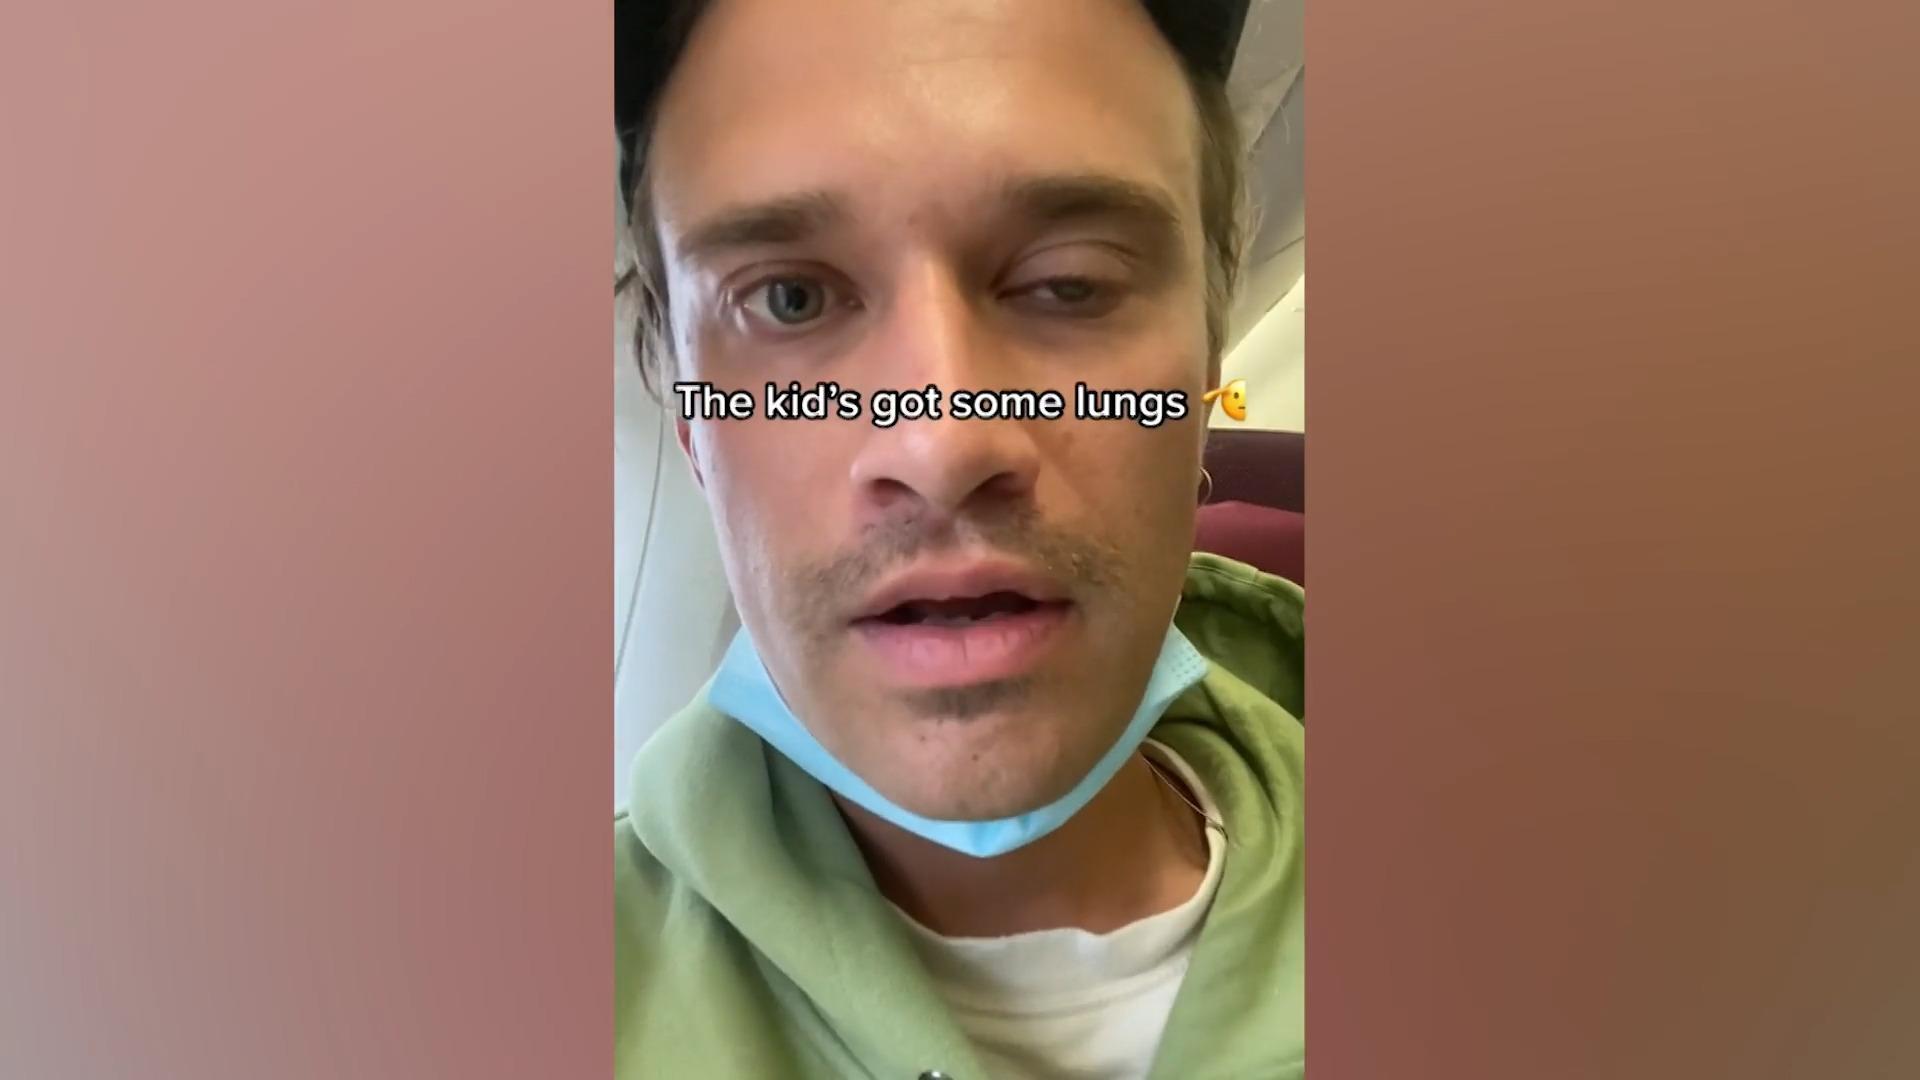 29-Stunden-Flug mit Kindergeschrei - Video geht viral! Musiker filmt sich im Flieger